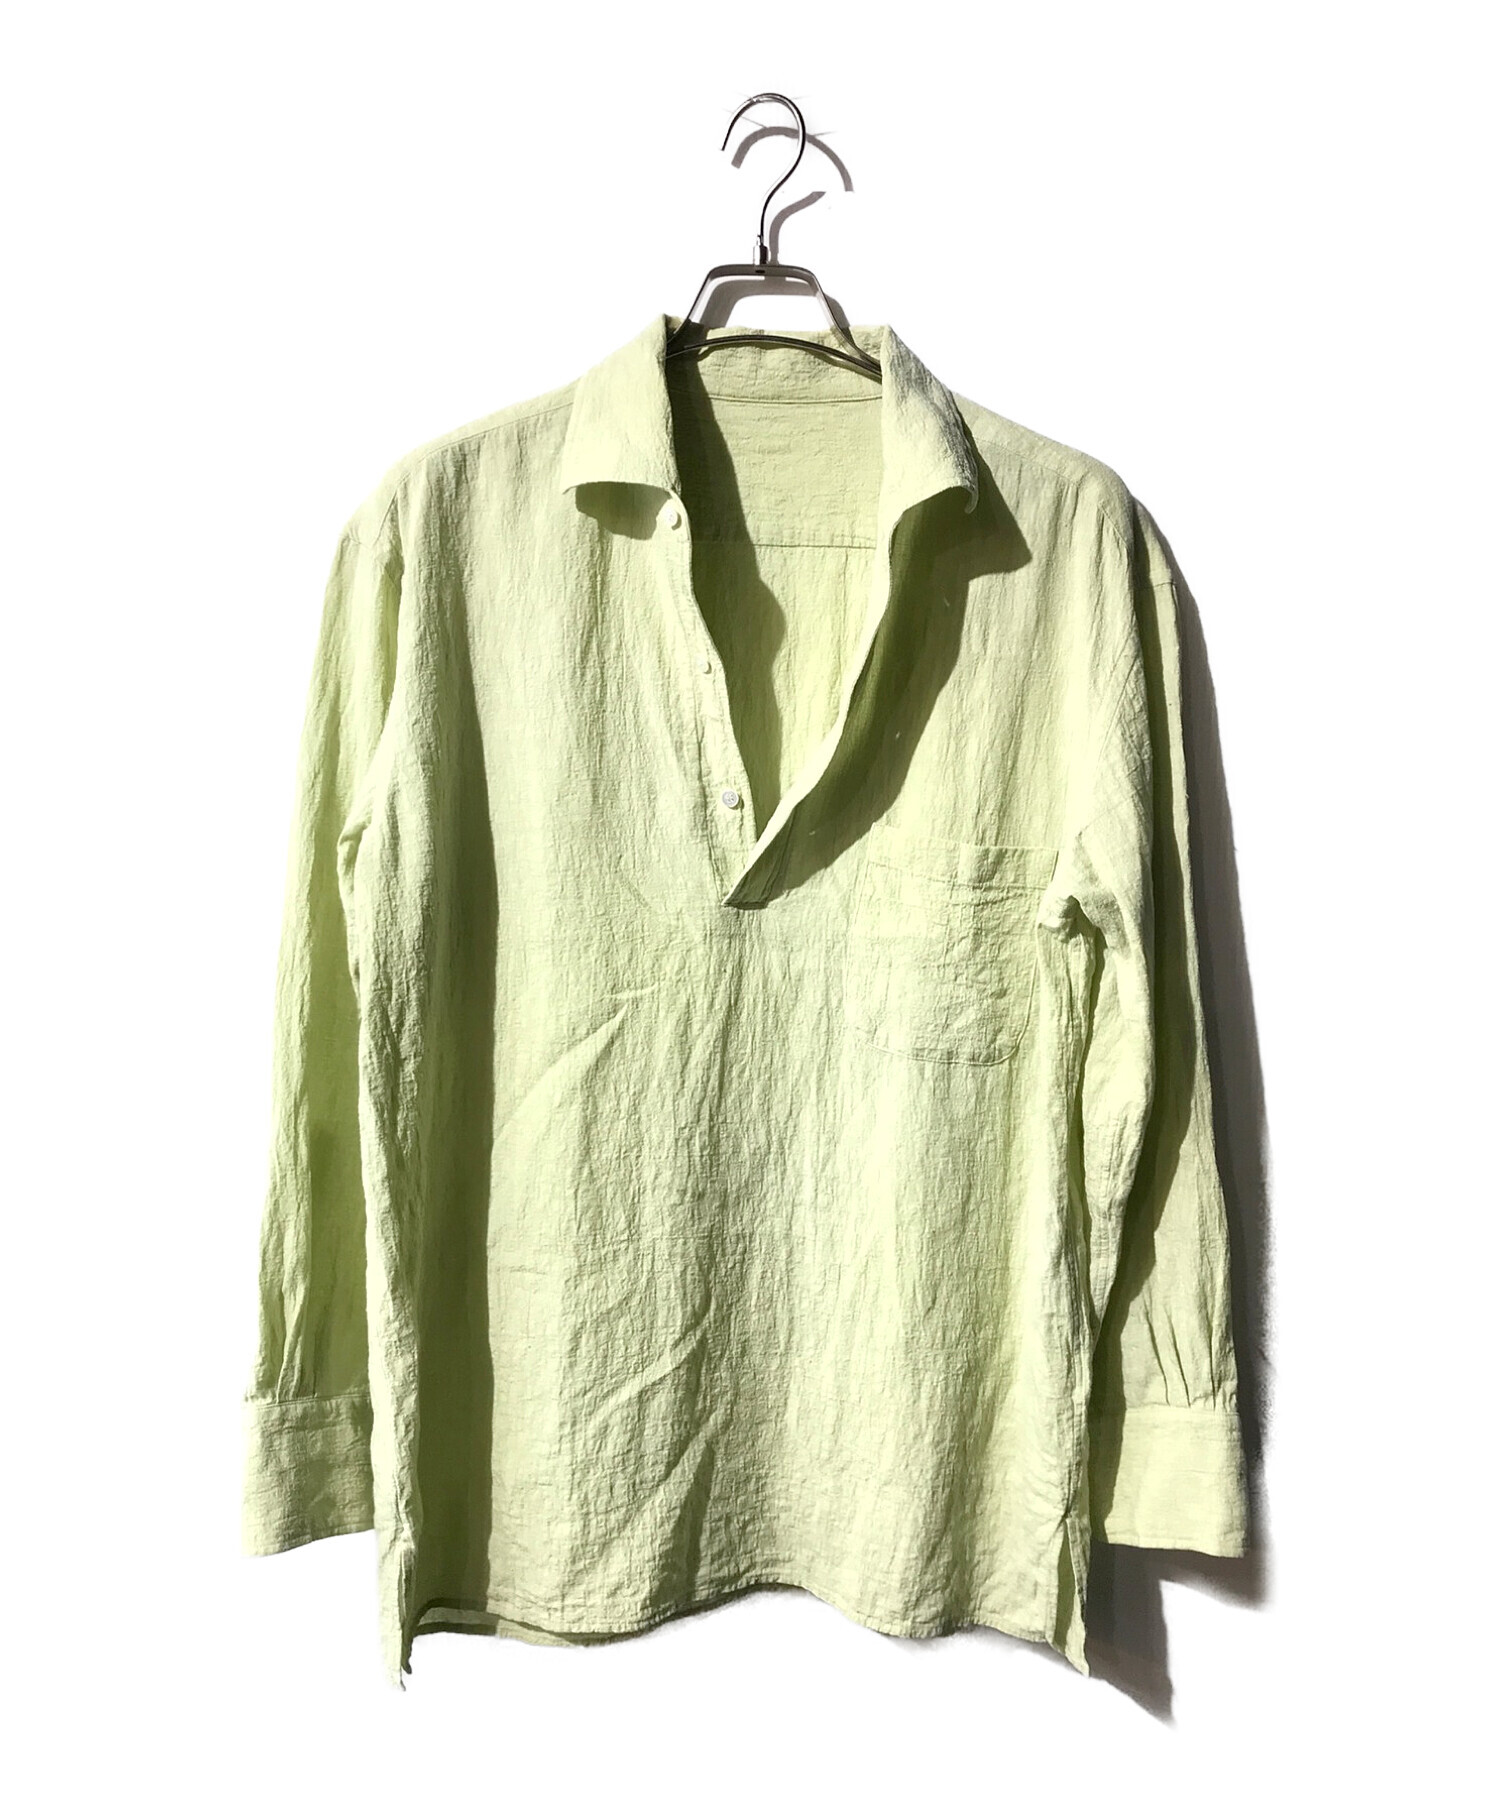 CALE (カル) ウォーターツイストリネンプルオーバーシャツ グリーン サイズ:34